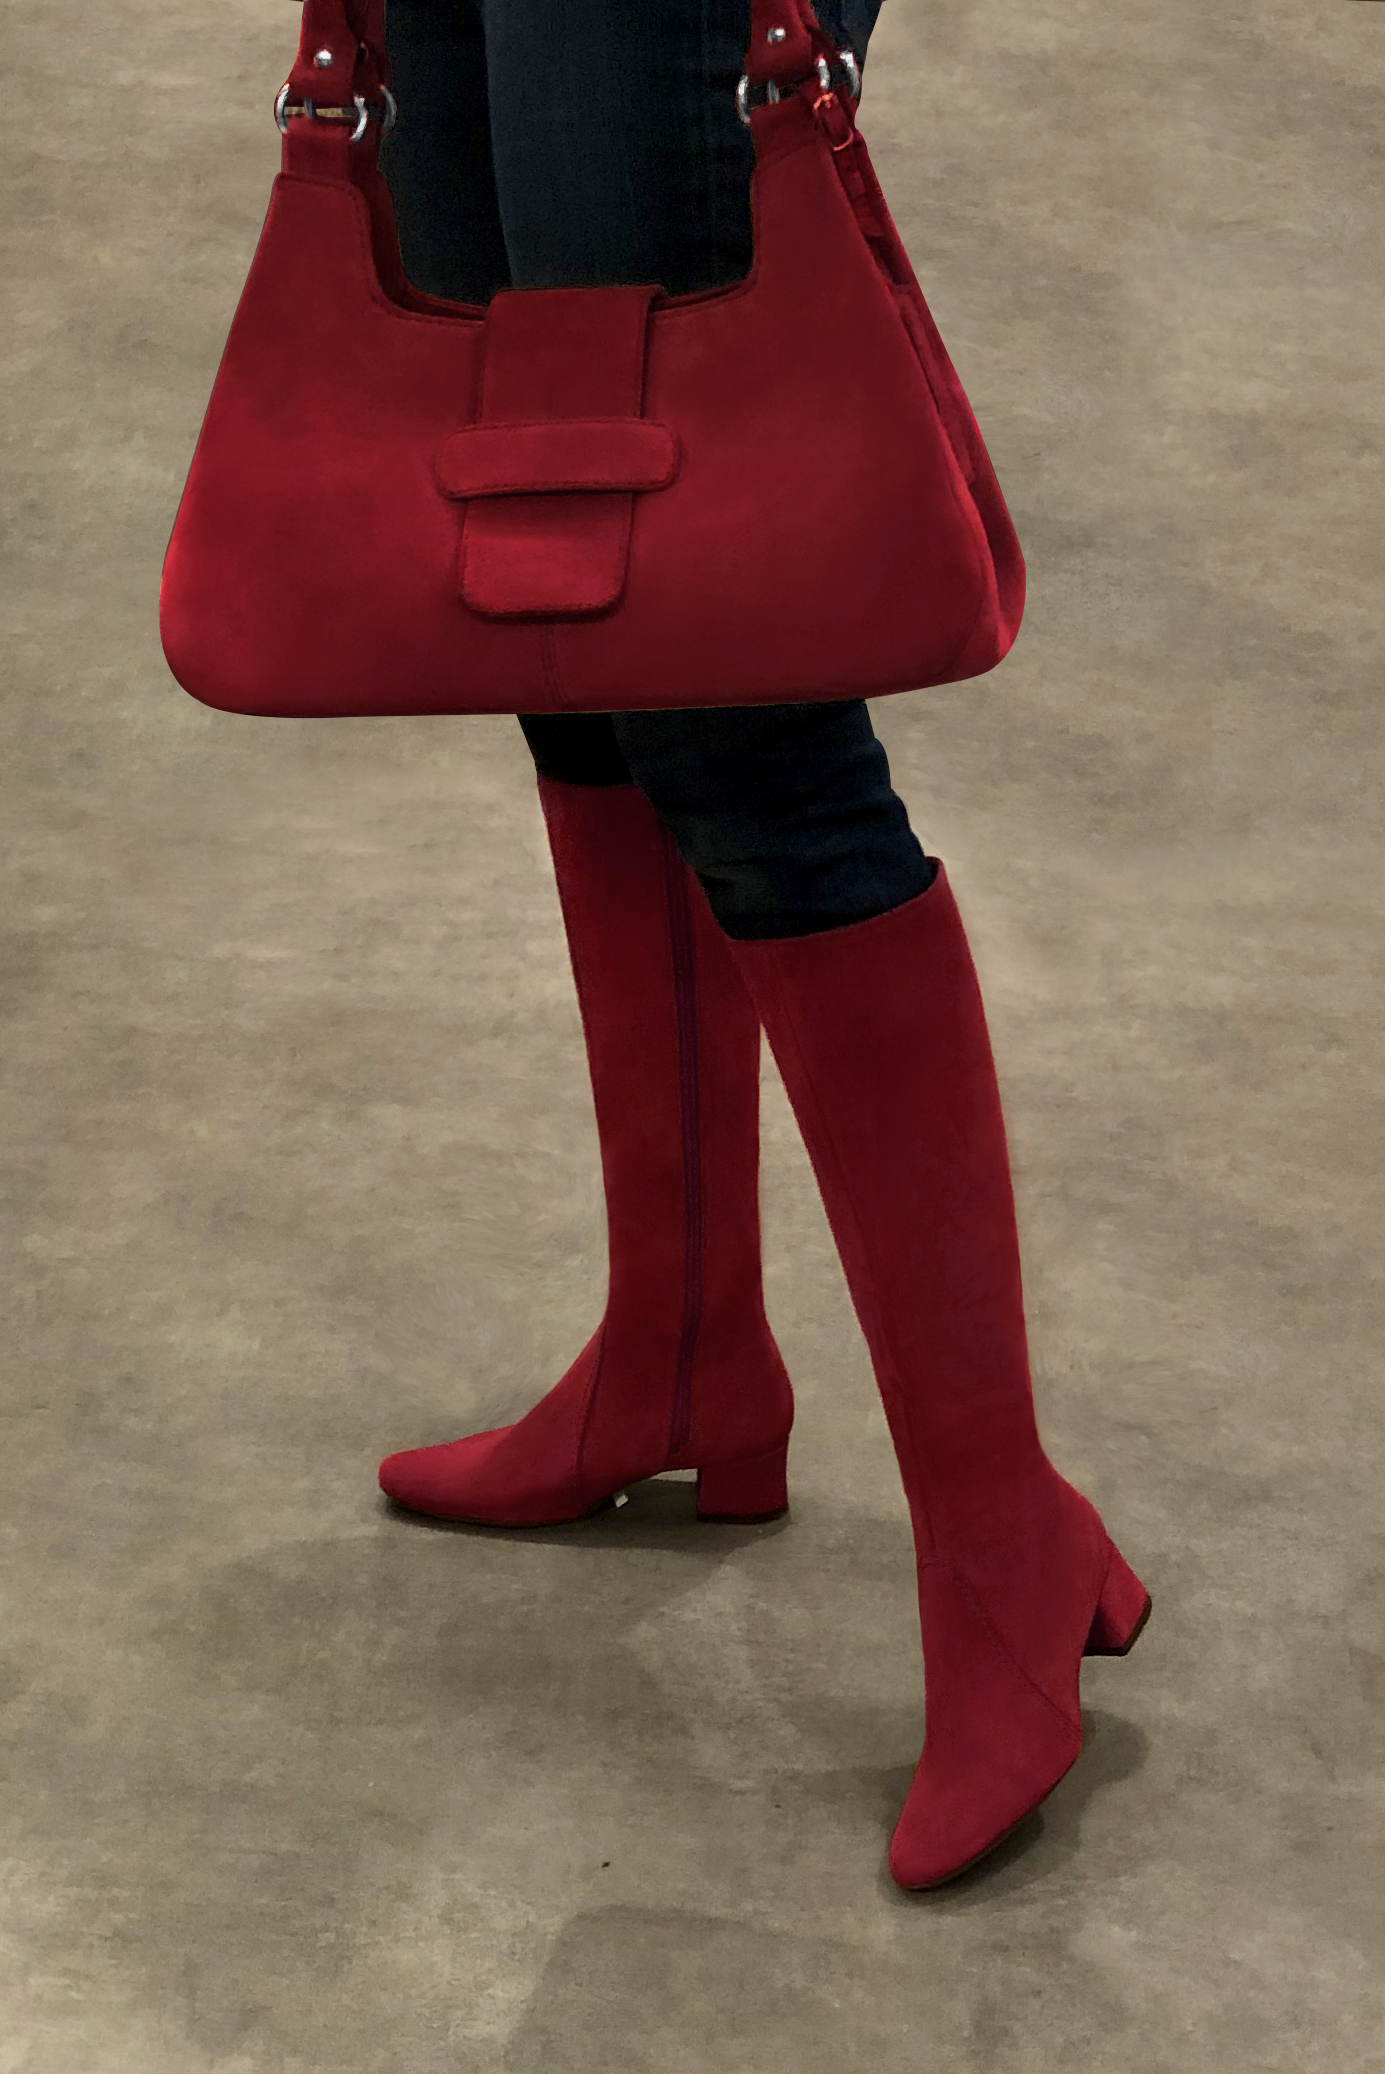 Bottes et sac assortis couleur rouge bordeaux - Florence KOOIJMAN